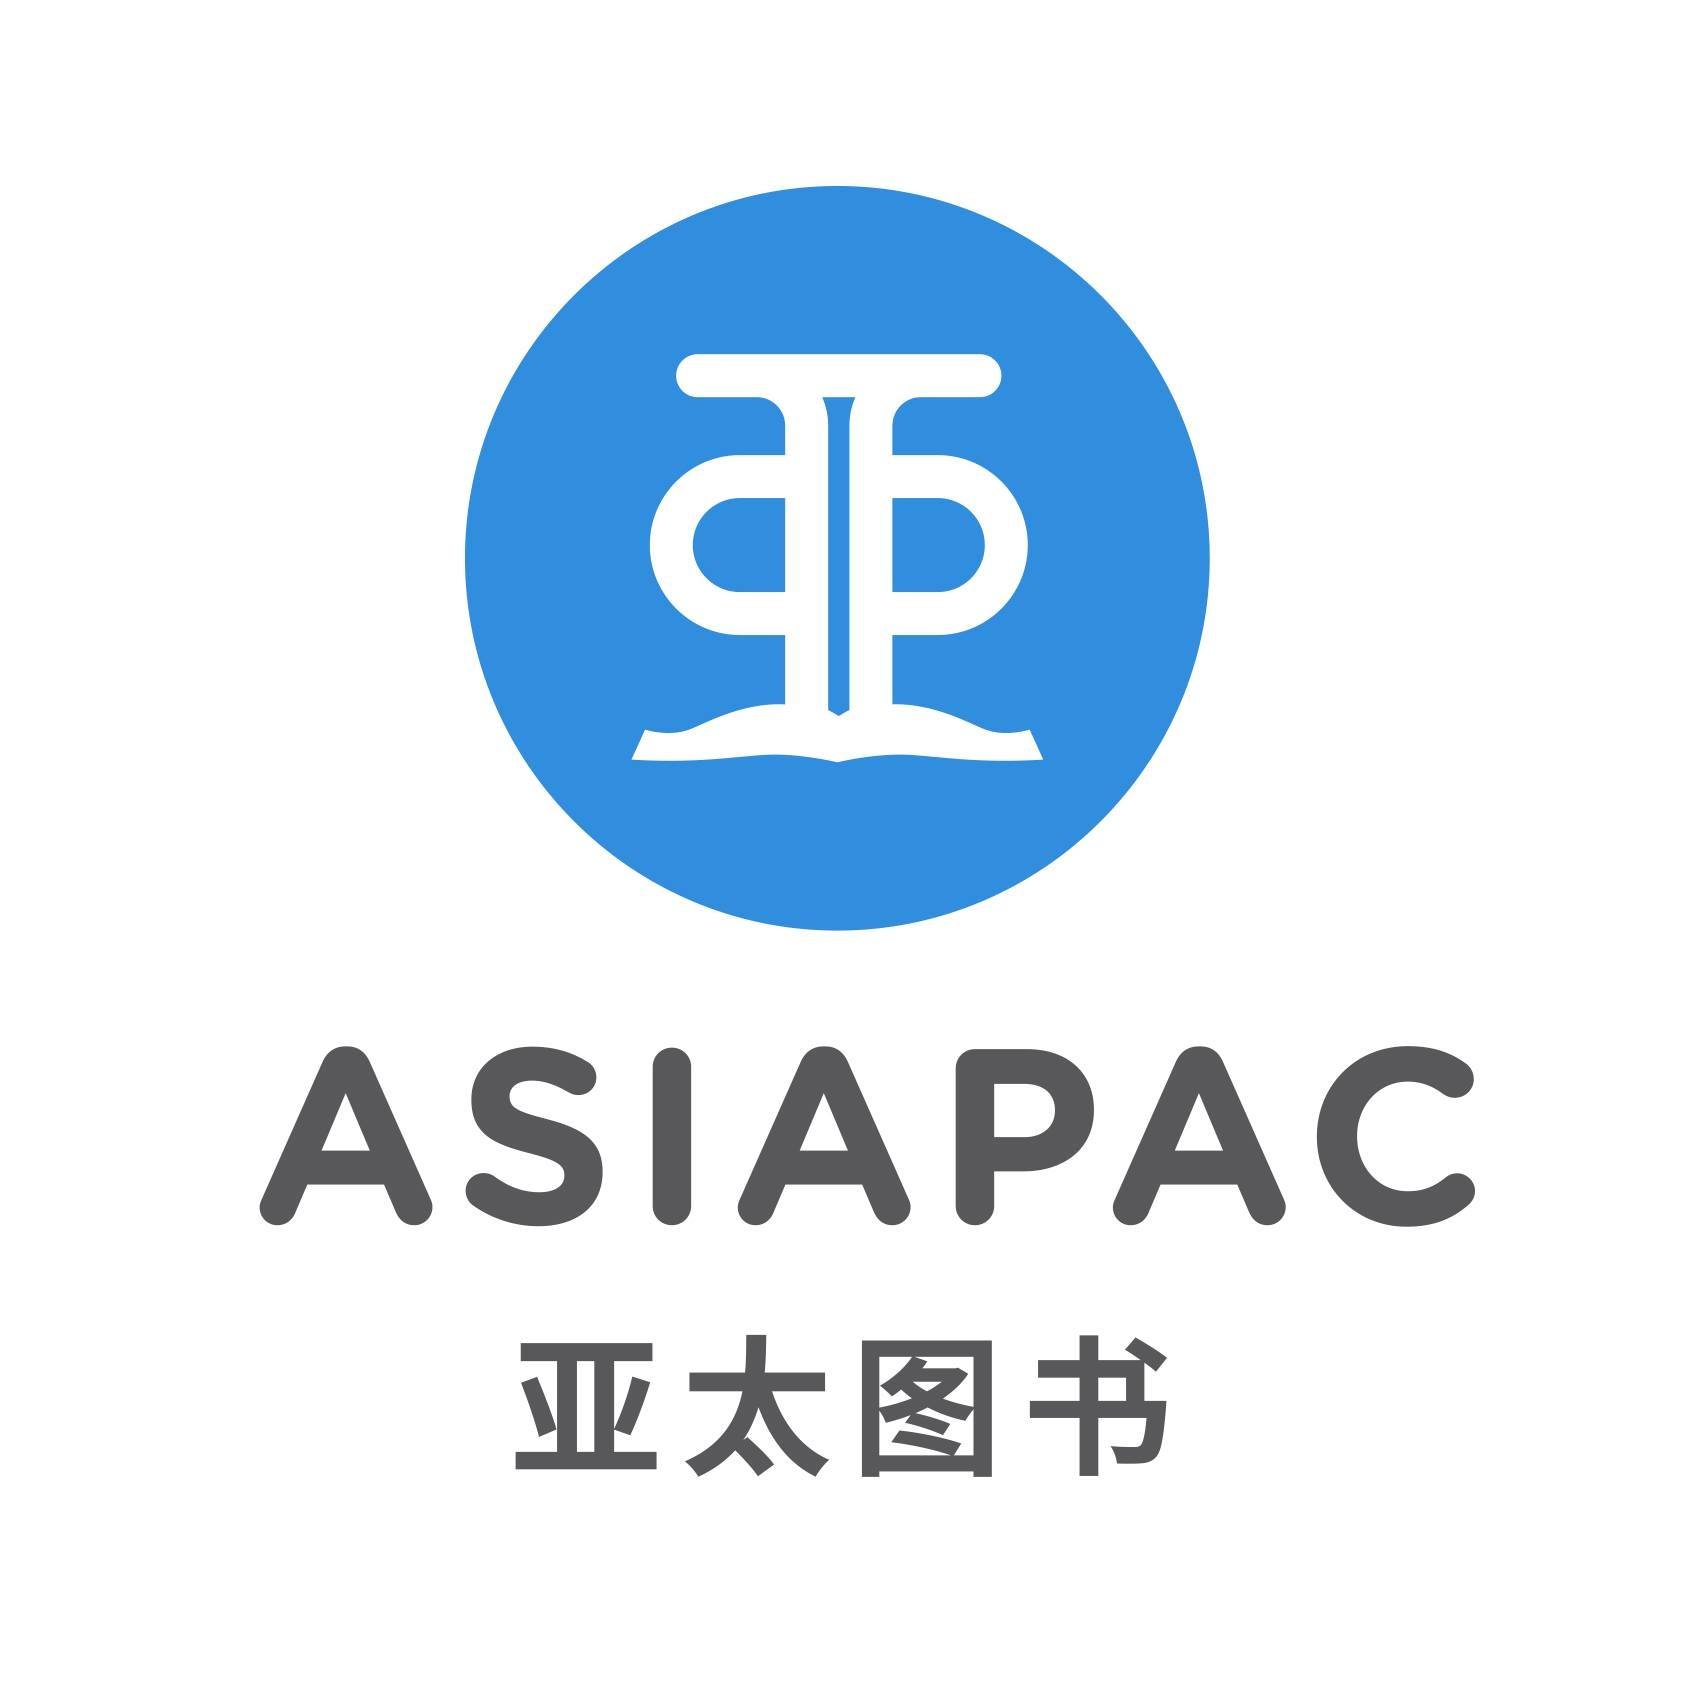 Asiapac